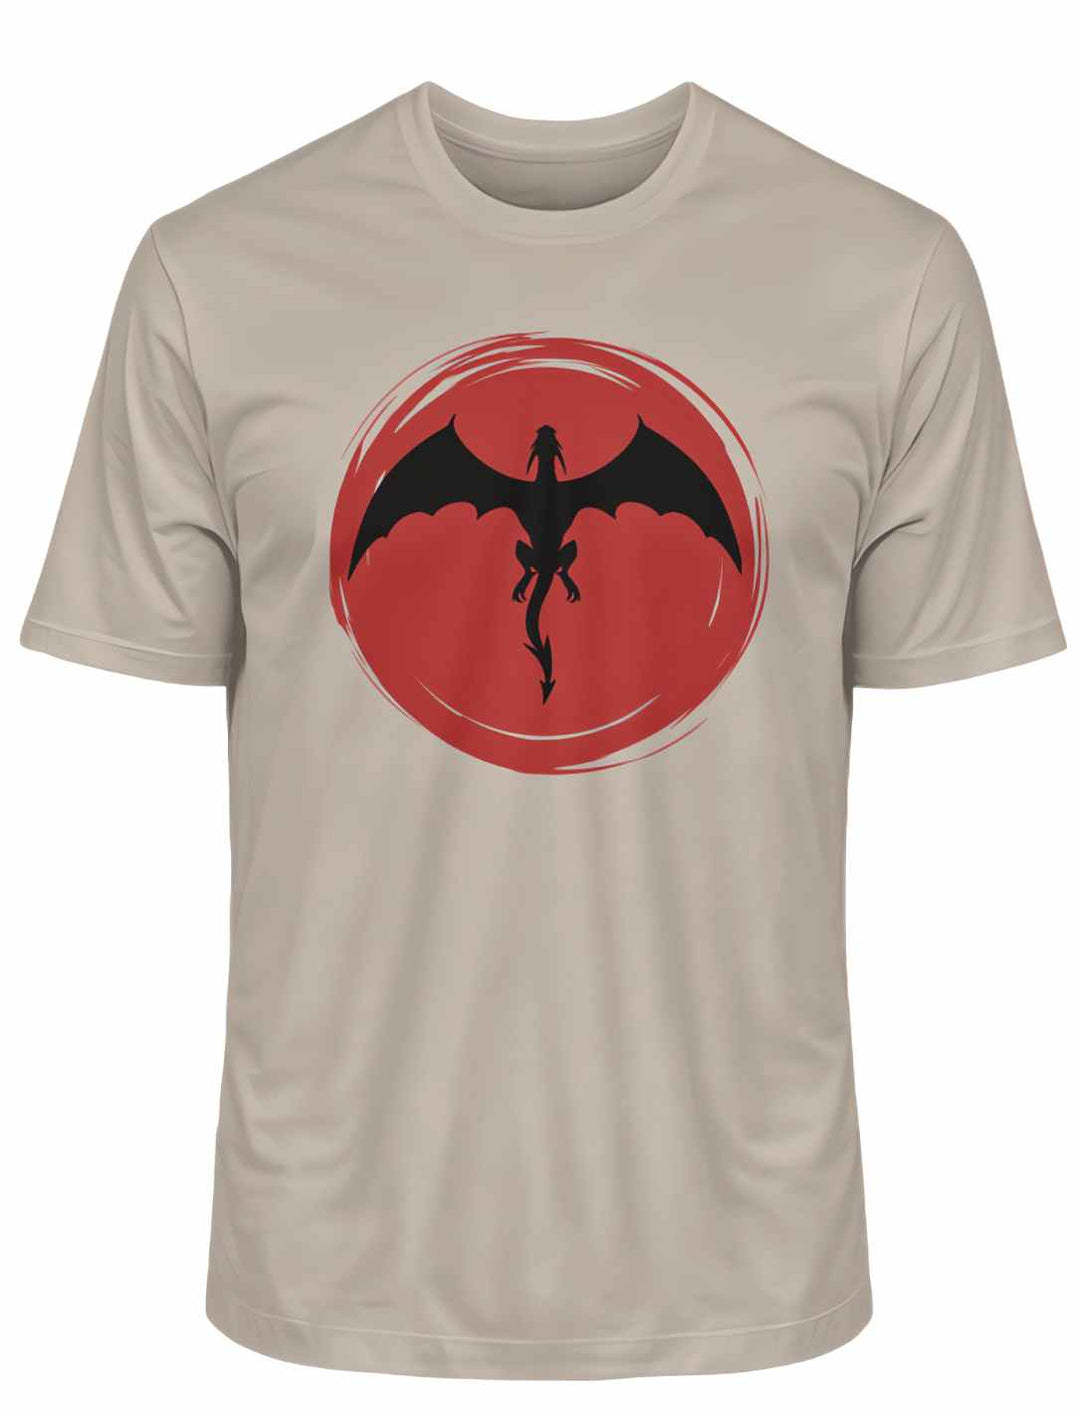 Desert Dust 'Saga of the Dragon' Organic Unisex T-Shirt in Liegedarstellung auf weißem Hintergrund, unterstreicht die warme Farbpalette und das detaillierte Drachen-Design.